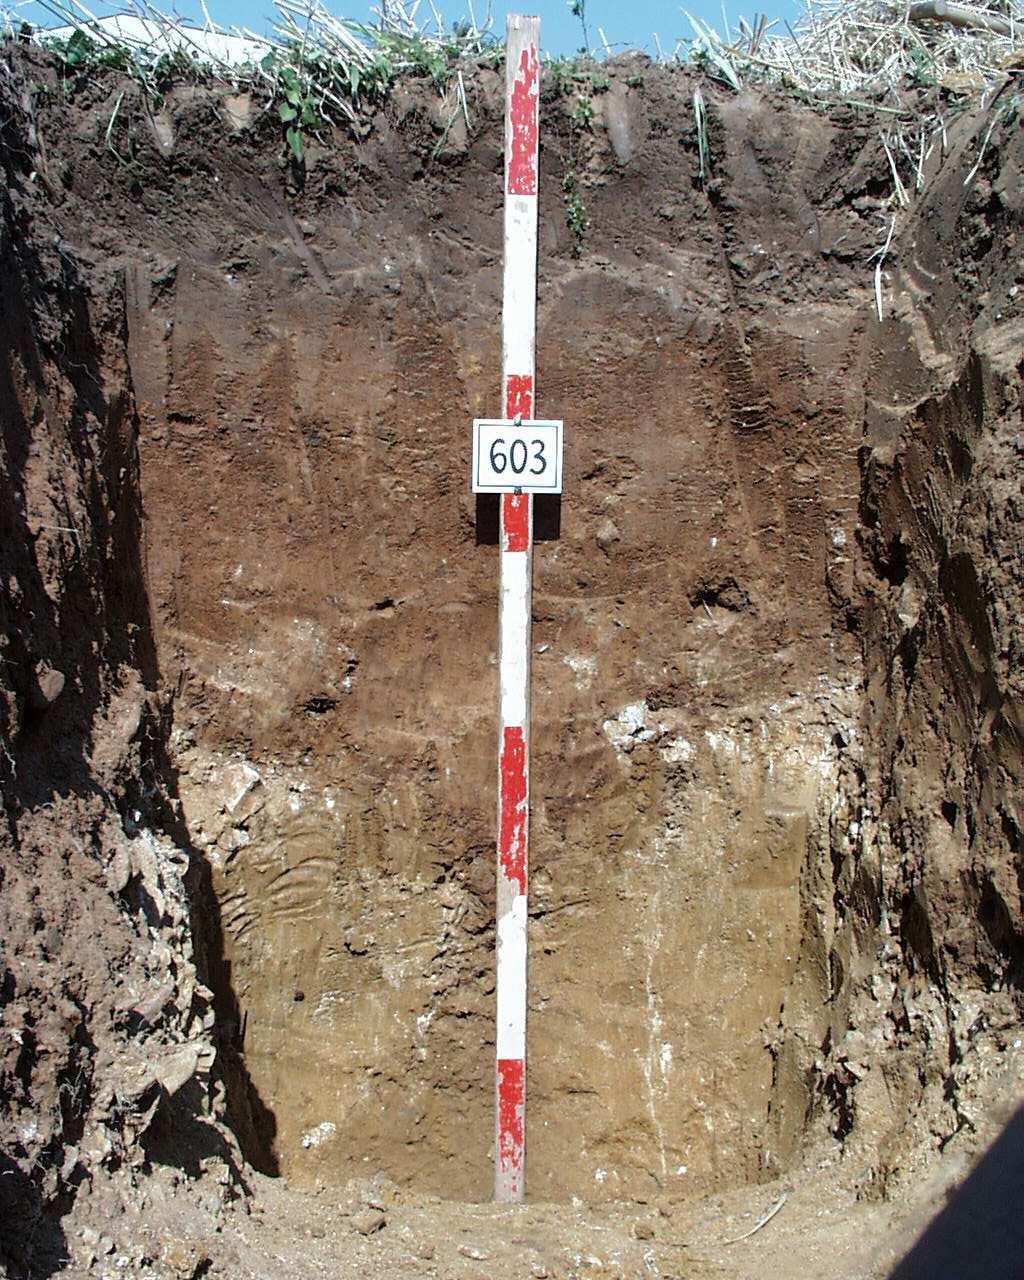 Basal soil